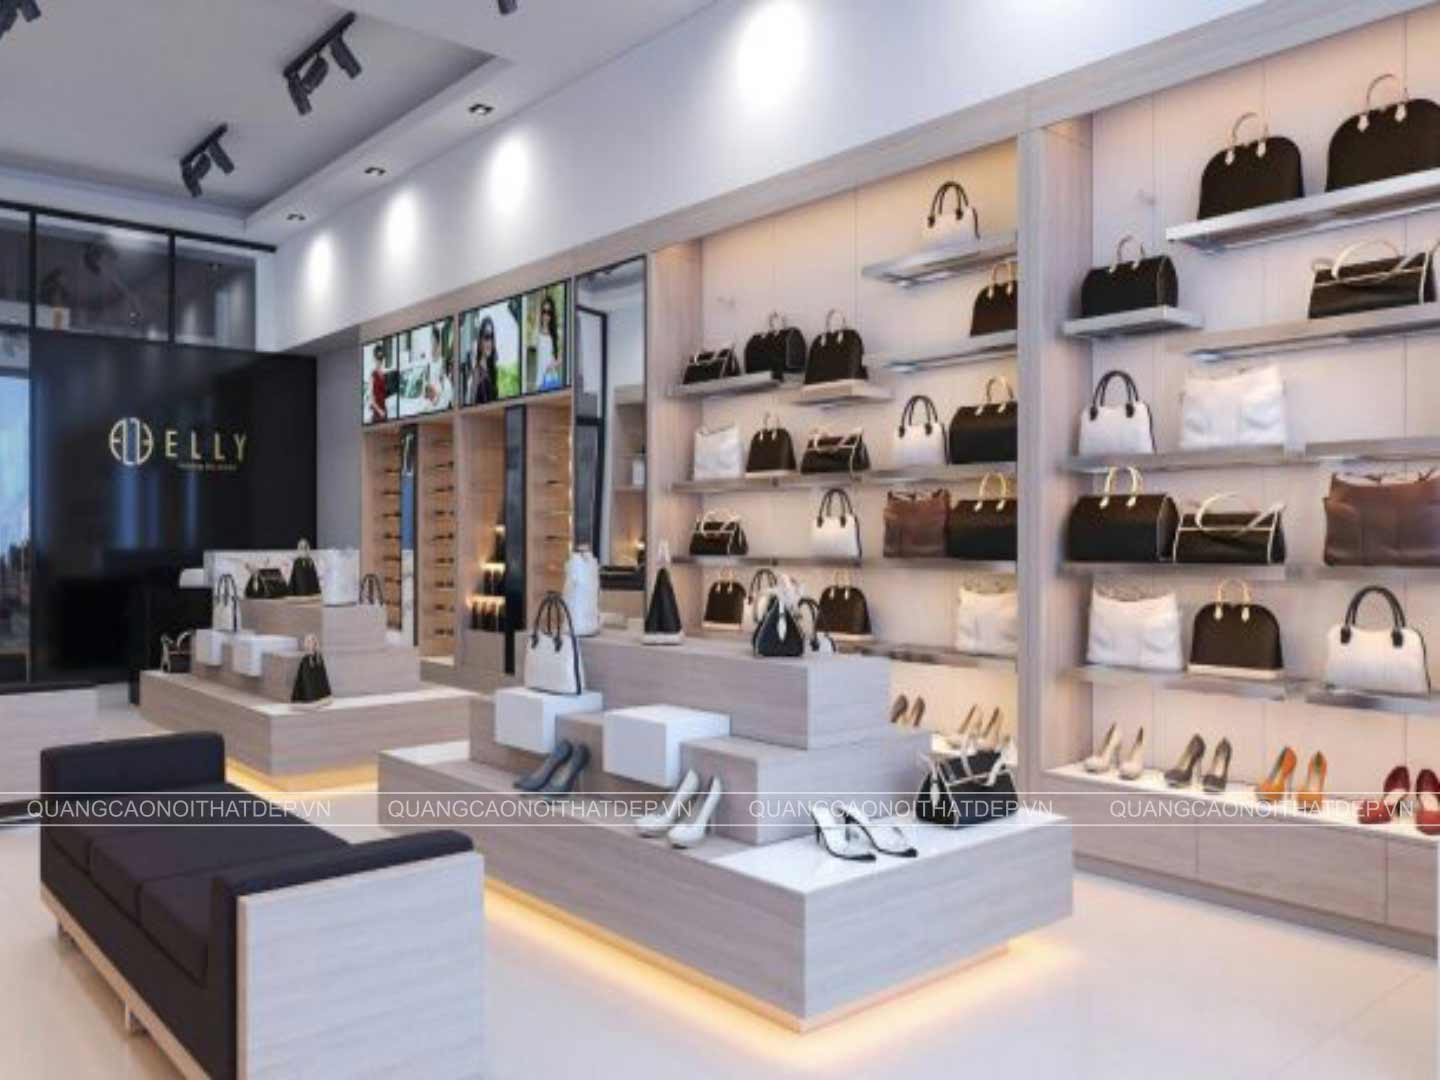 mẫu thiết kế nội thất cửa hàng giày dép túi xách đẹp